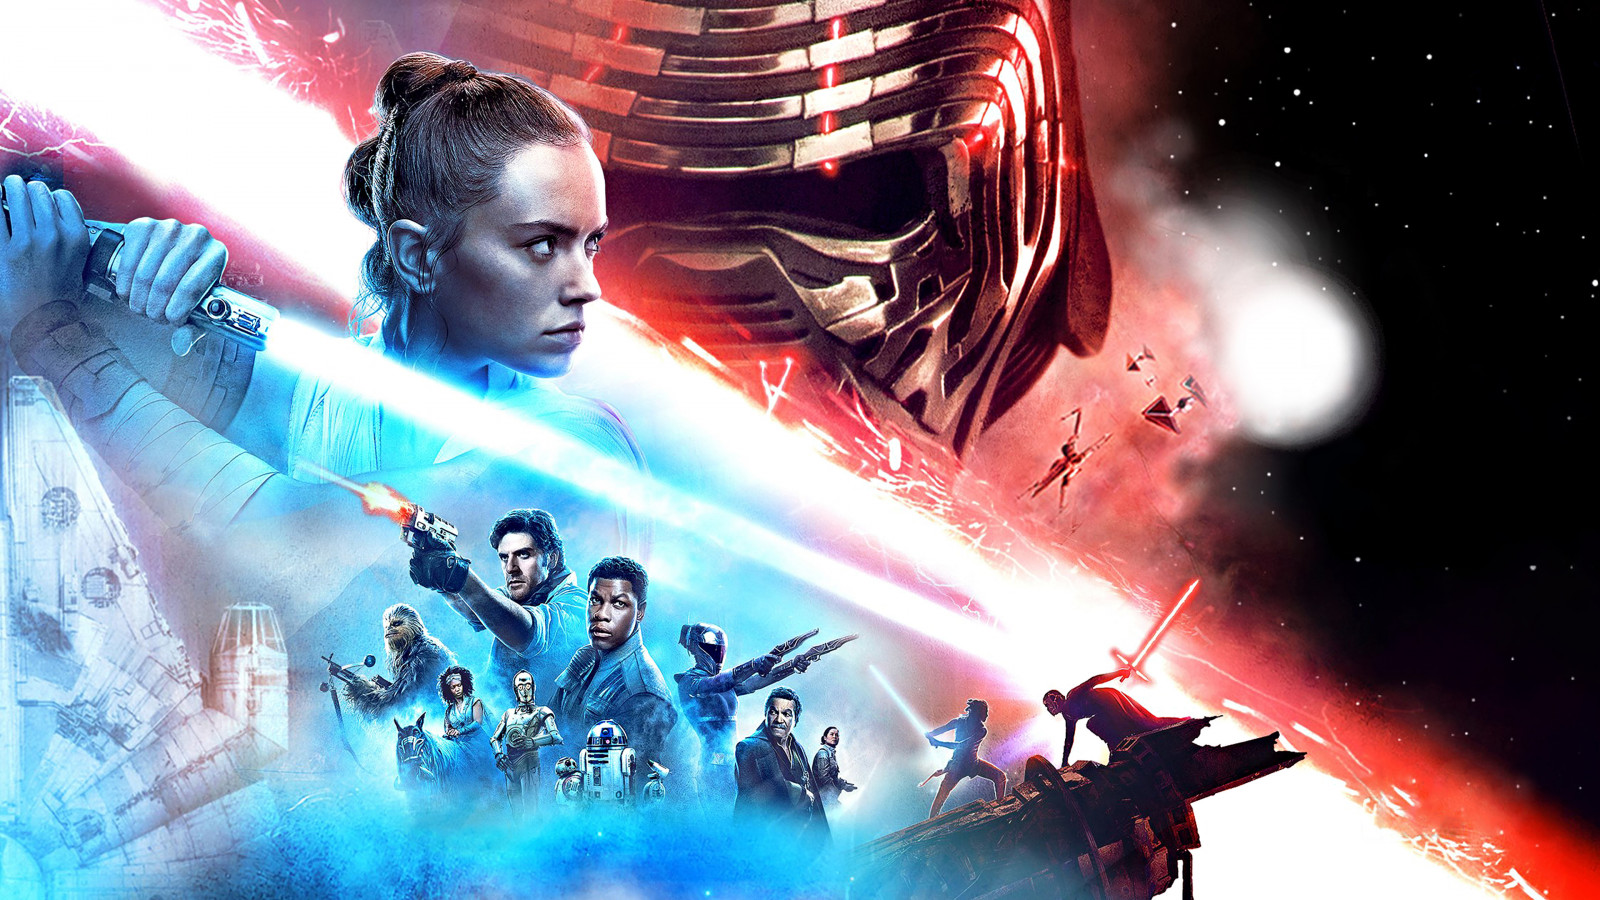 Episode IX Star Wars: The Rise of Skywalker wallpaper 1600x900